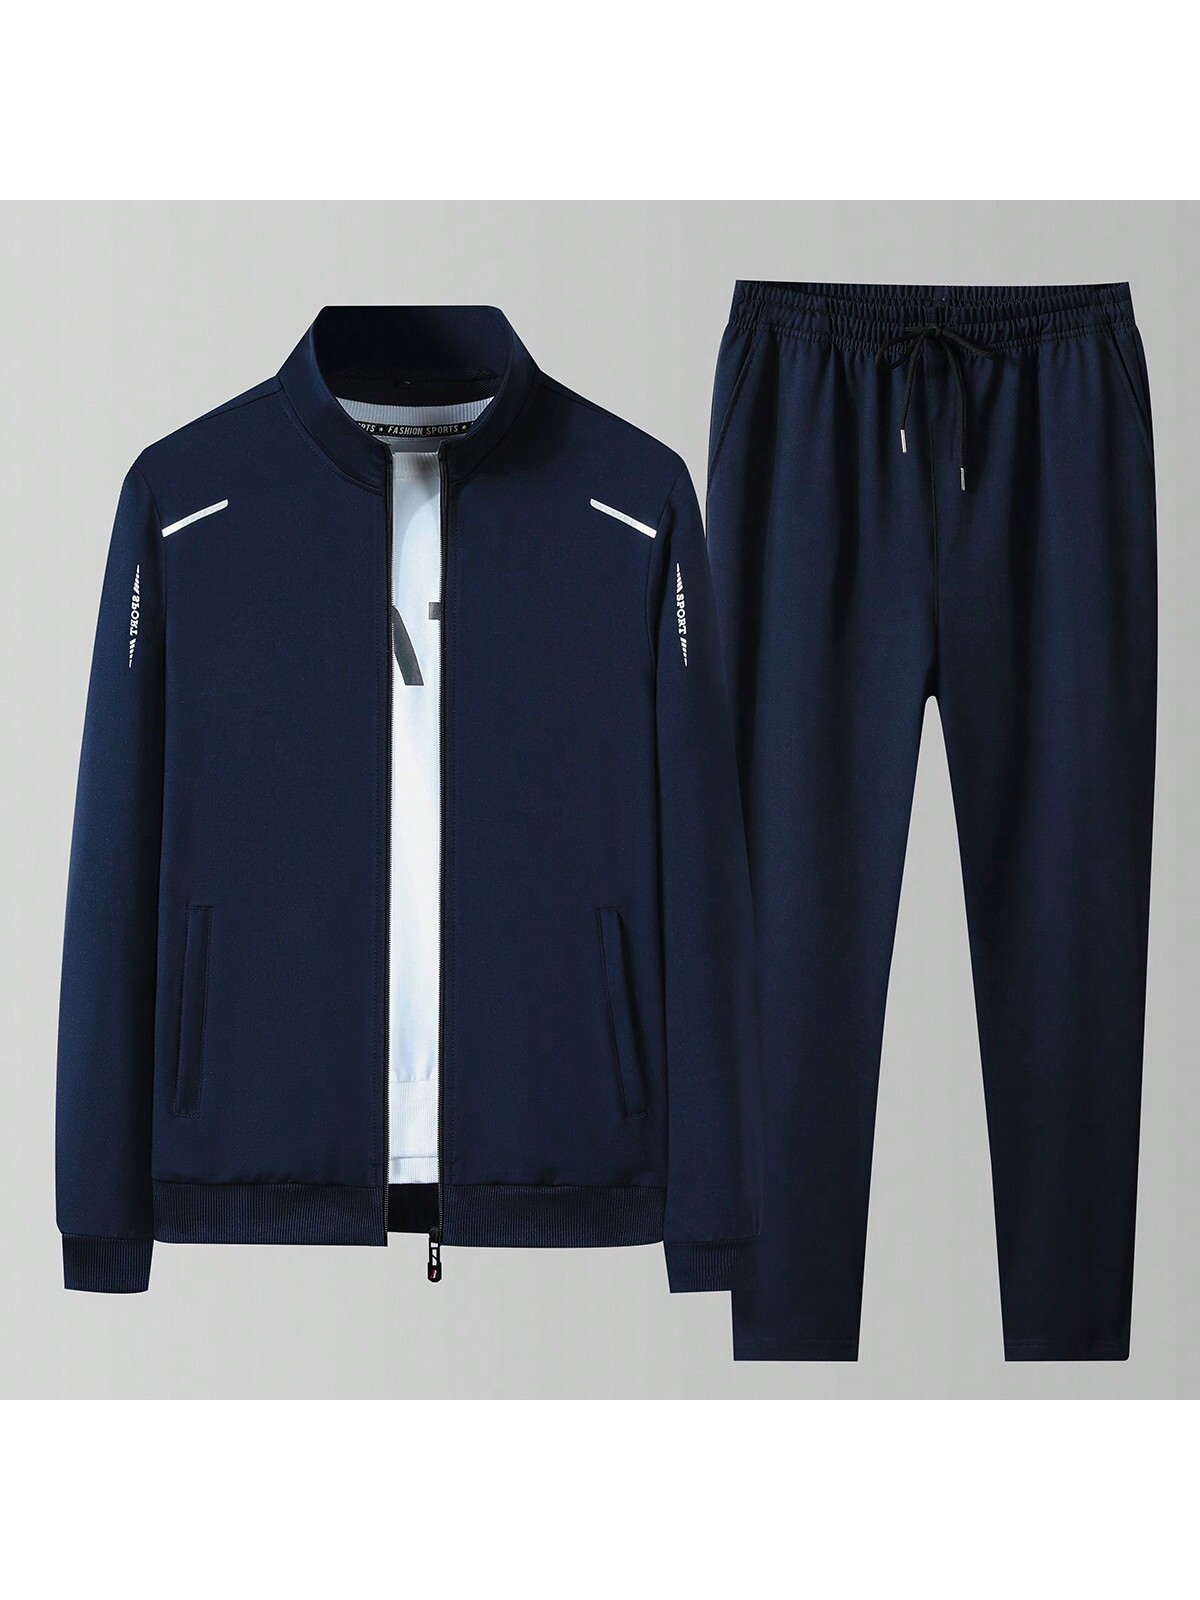 Мужская весенне-осенняя спортивная куртка и брюки контрастного цвета с застежкой-молнией спереди и воротником-стойкой, королевский синий